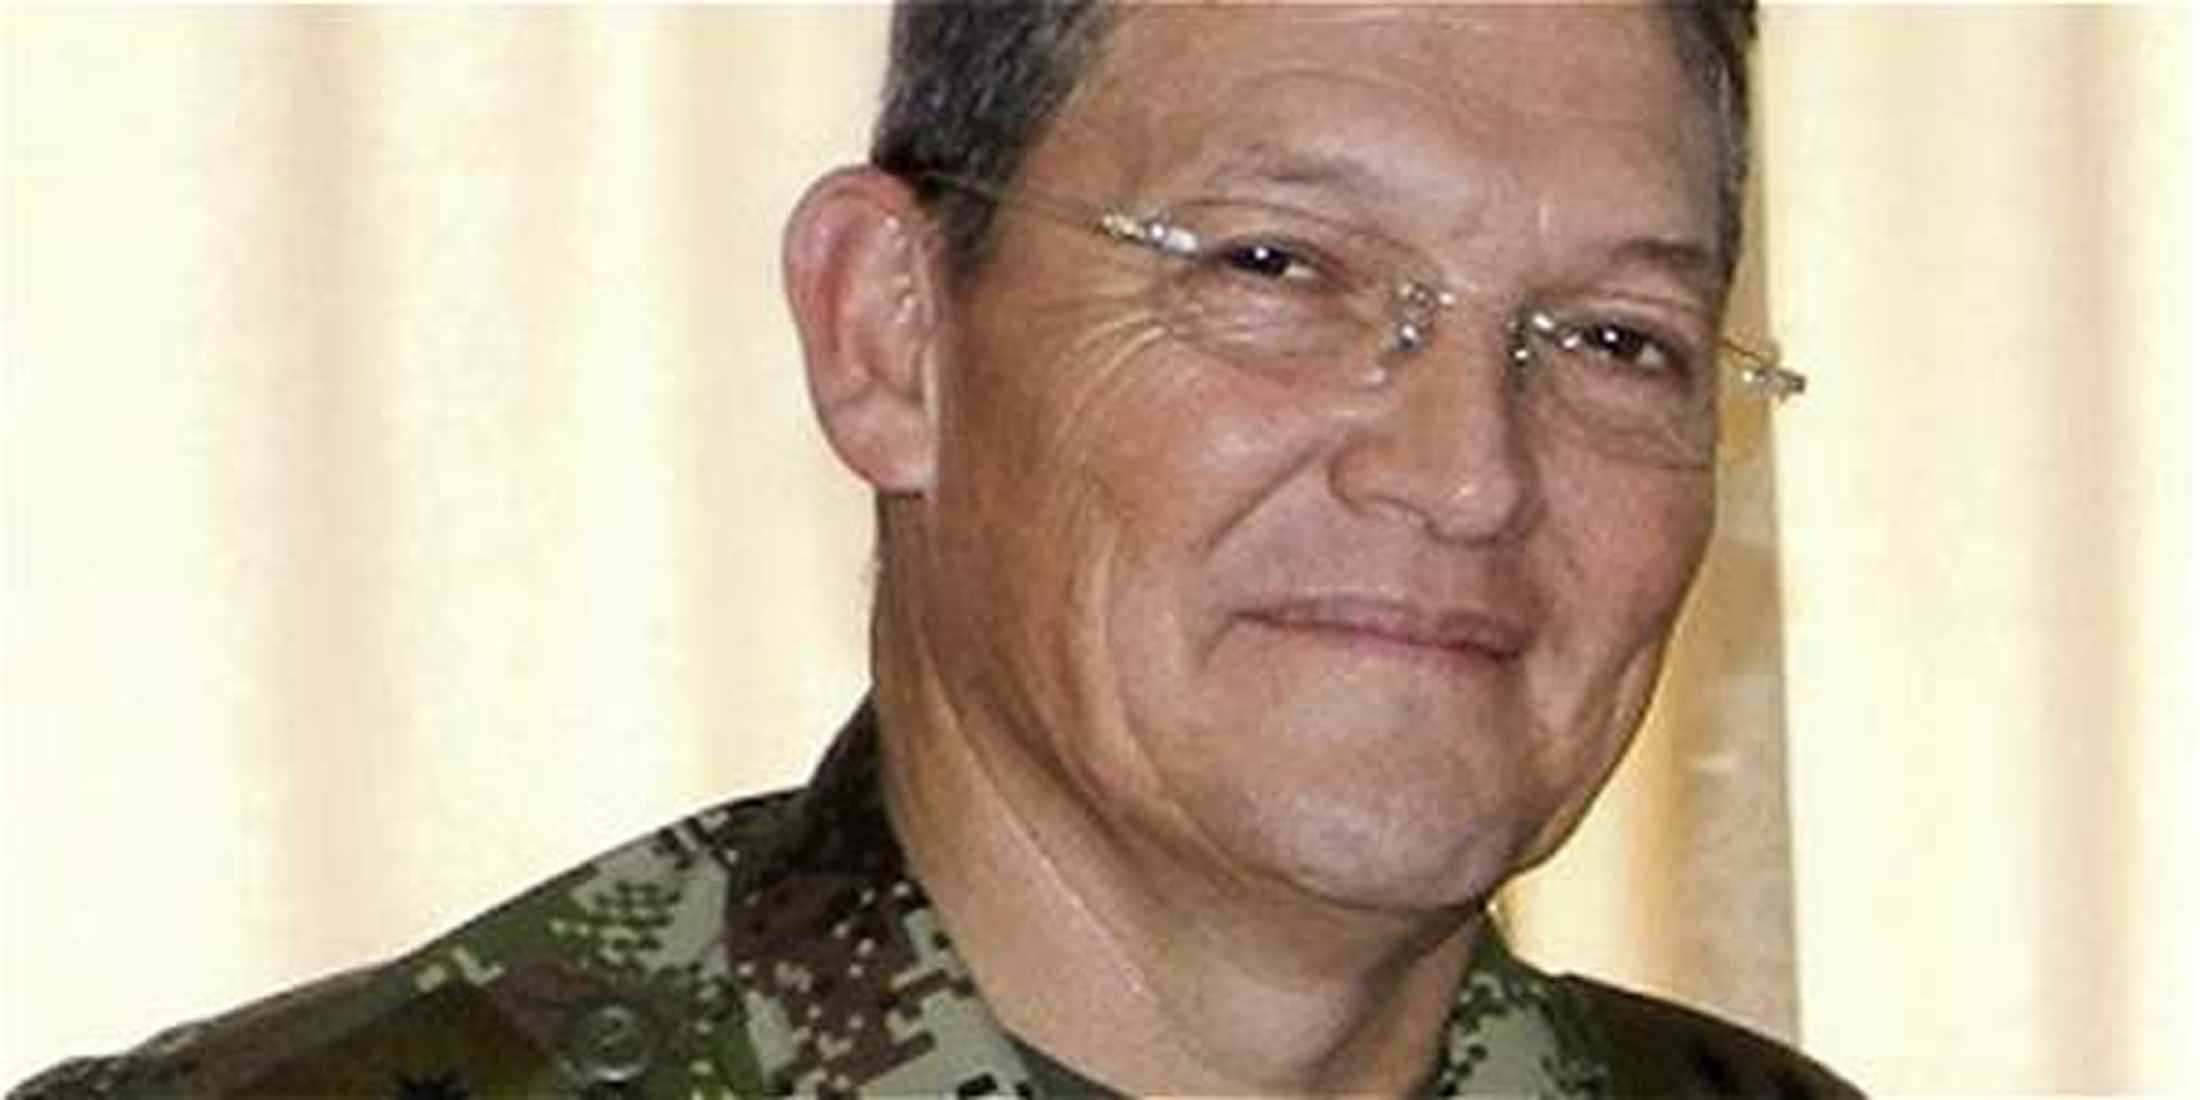 Polémica en Colombia por foto de general Alzate sonriendo junto a guerrillero de las Farc (Imagen)